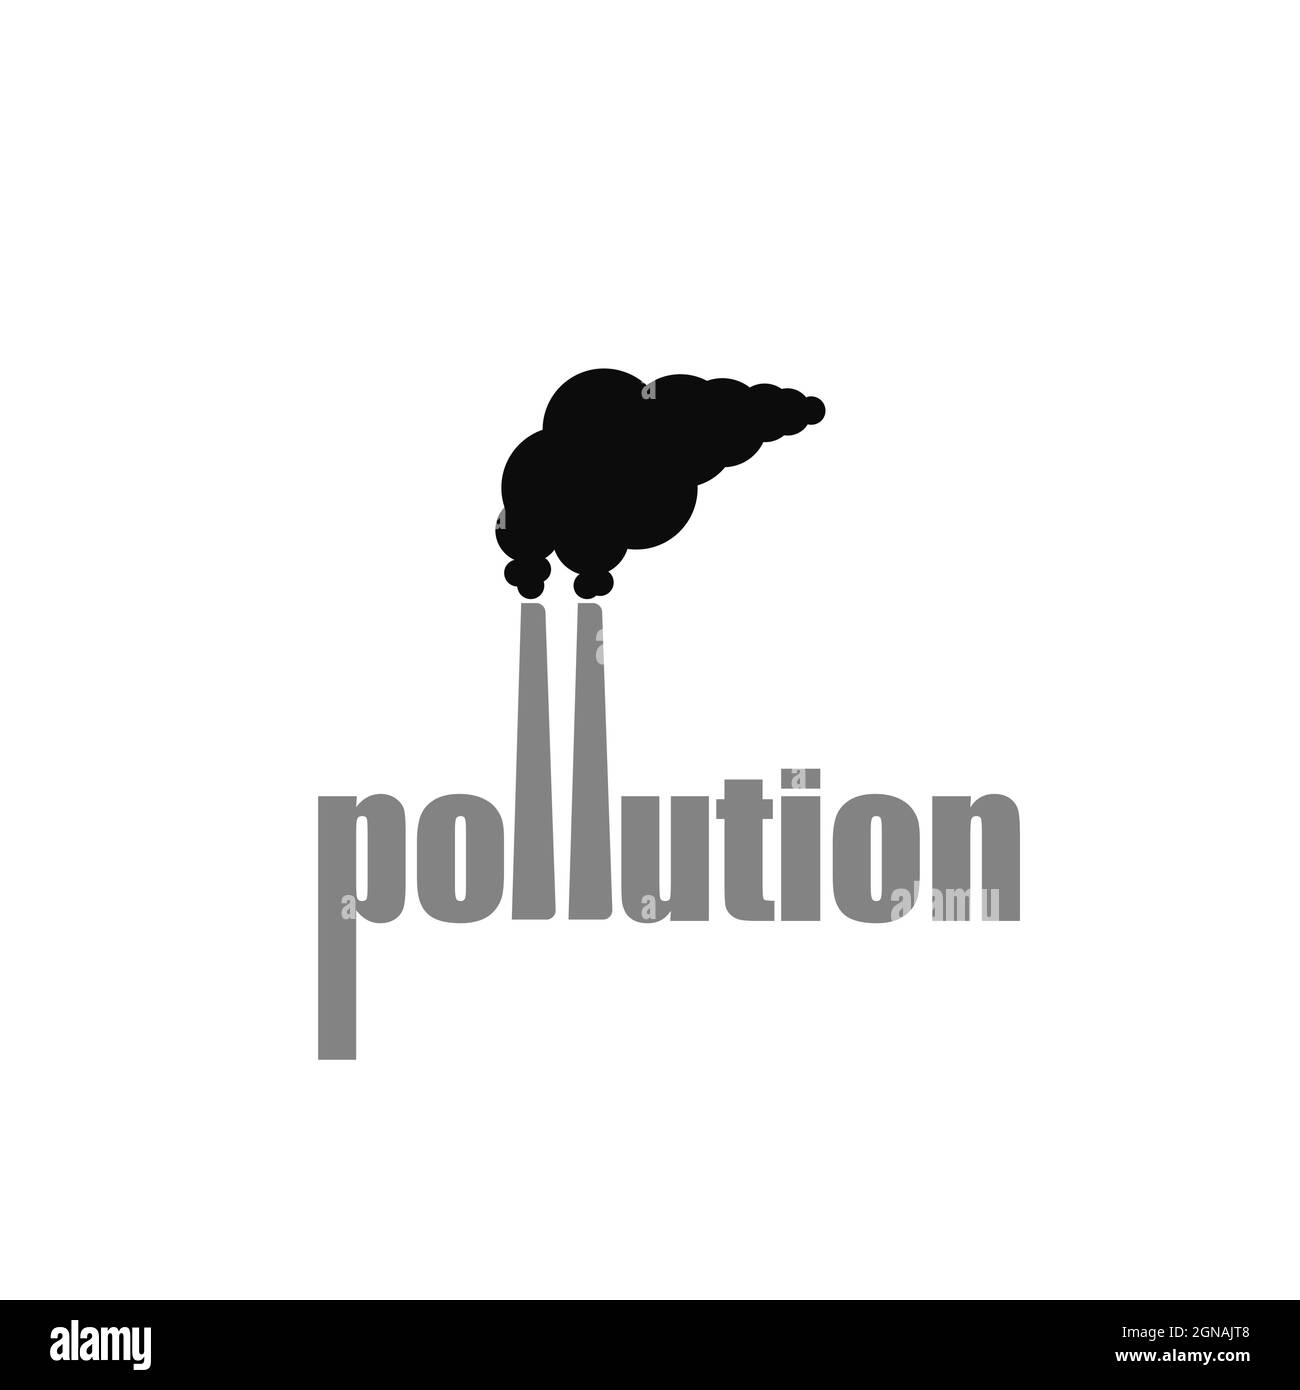 logo pollution isolé sur fond blanc, logo créatif sur la pollution de l'air Illustration de Vecteur